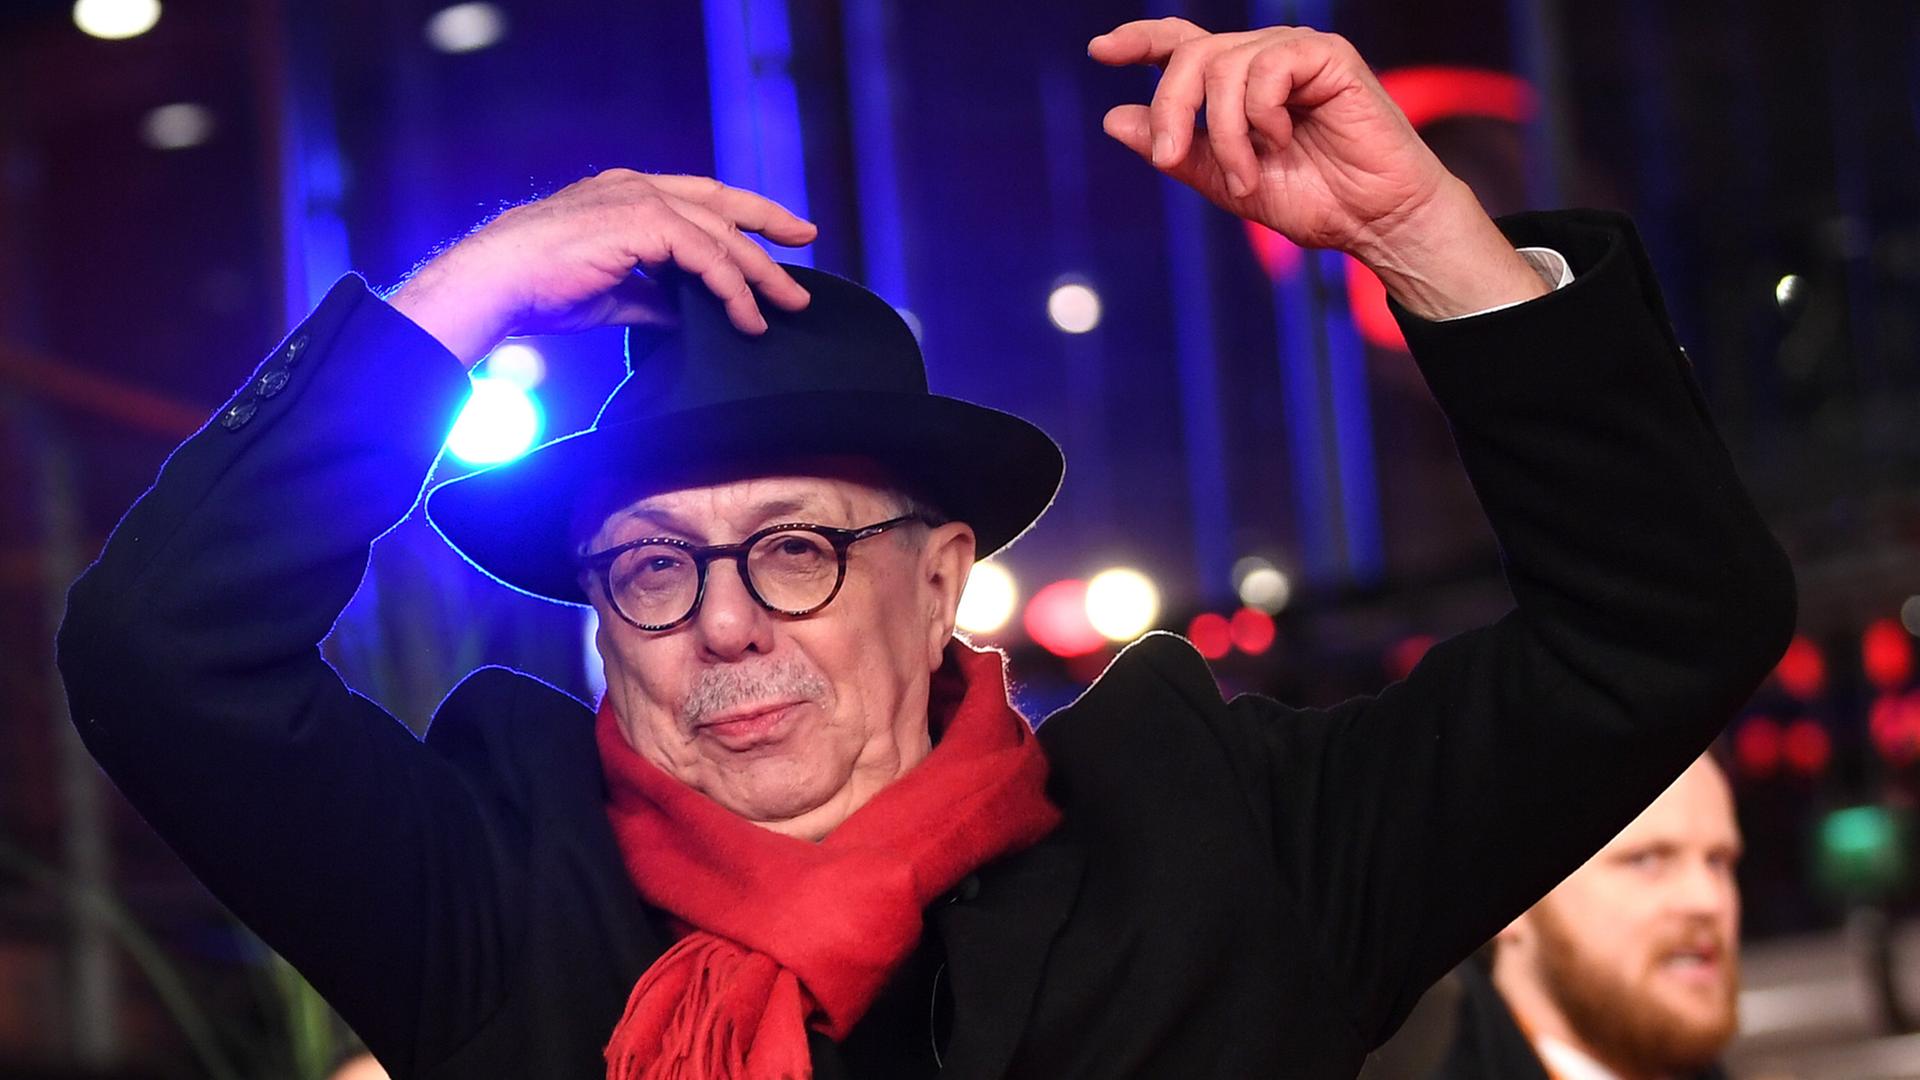 Berlinale-Direktor Dieter Kosslick kommt am 7. Februar 2019 zur feierlichen Eröffnung der Berlinale.